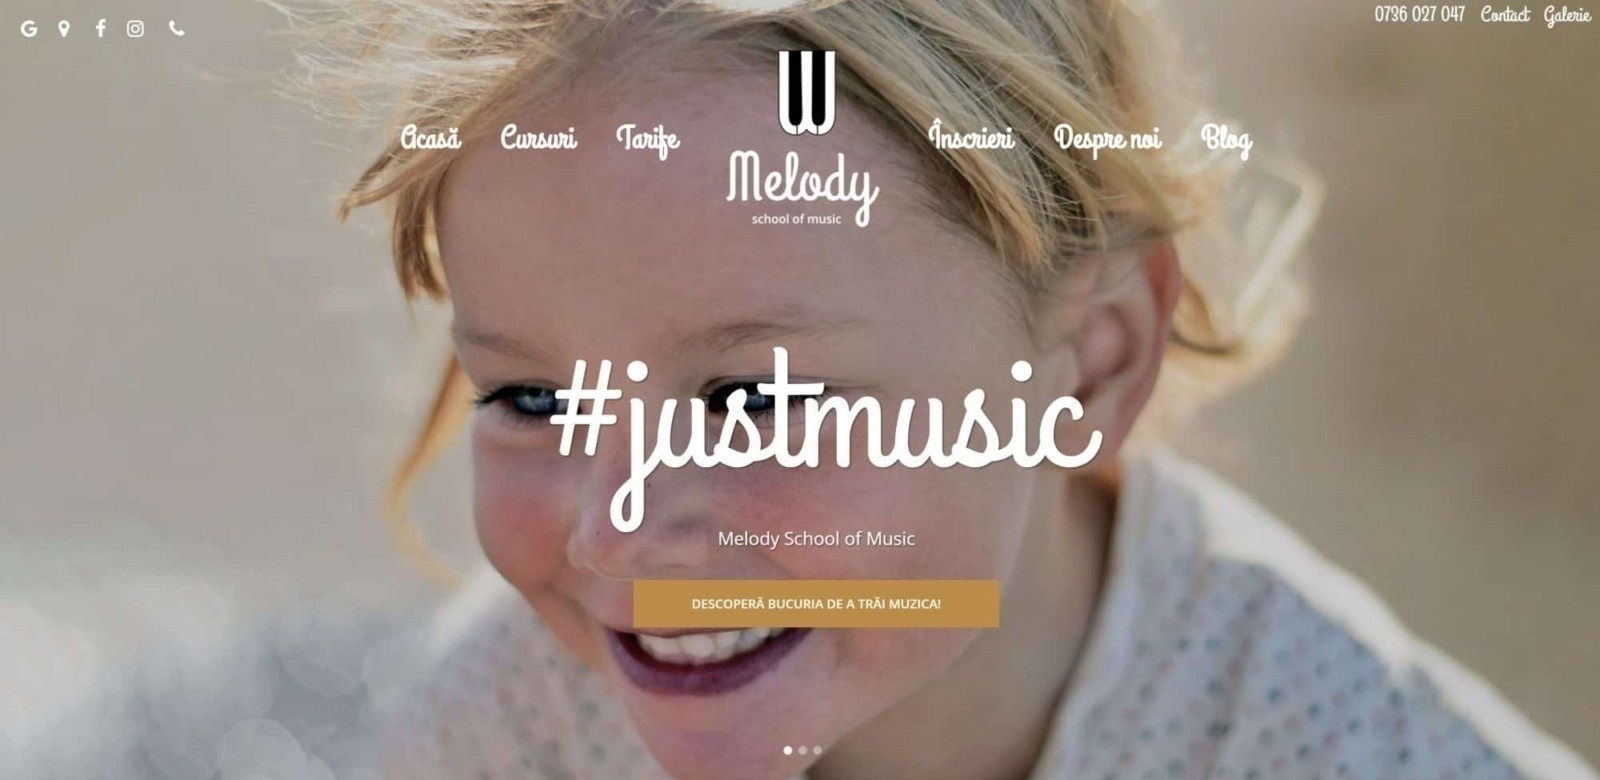 Melody School of Music, creare site web